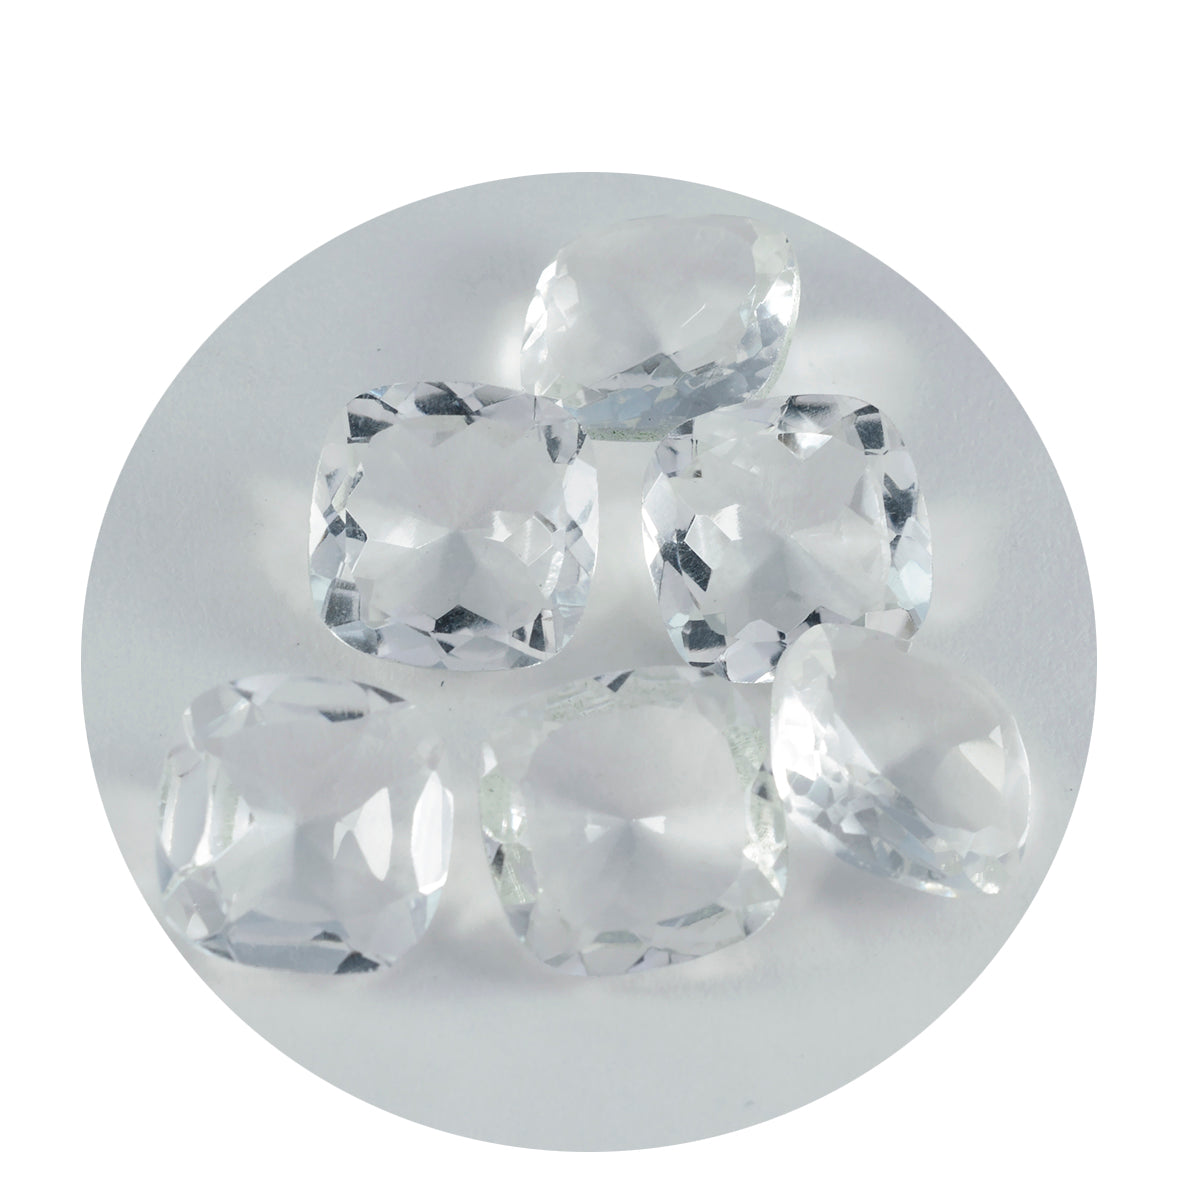 Riyogems, 1 pieza, cristal blanco de cuarzo facetado, 14x14mm, forma de cojín, piedra de calidad encantadora